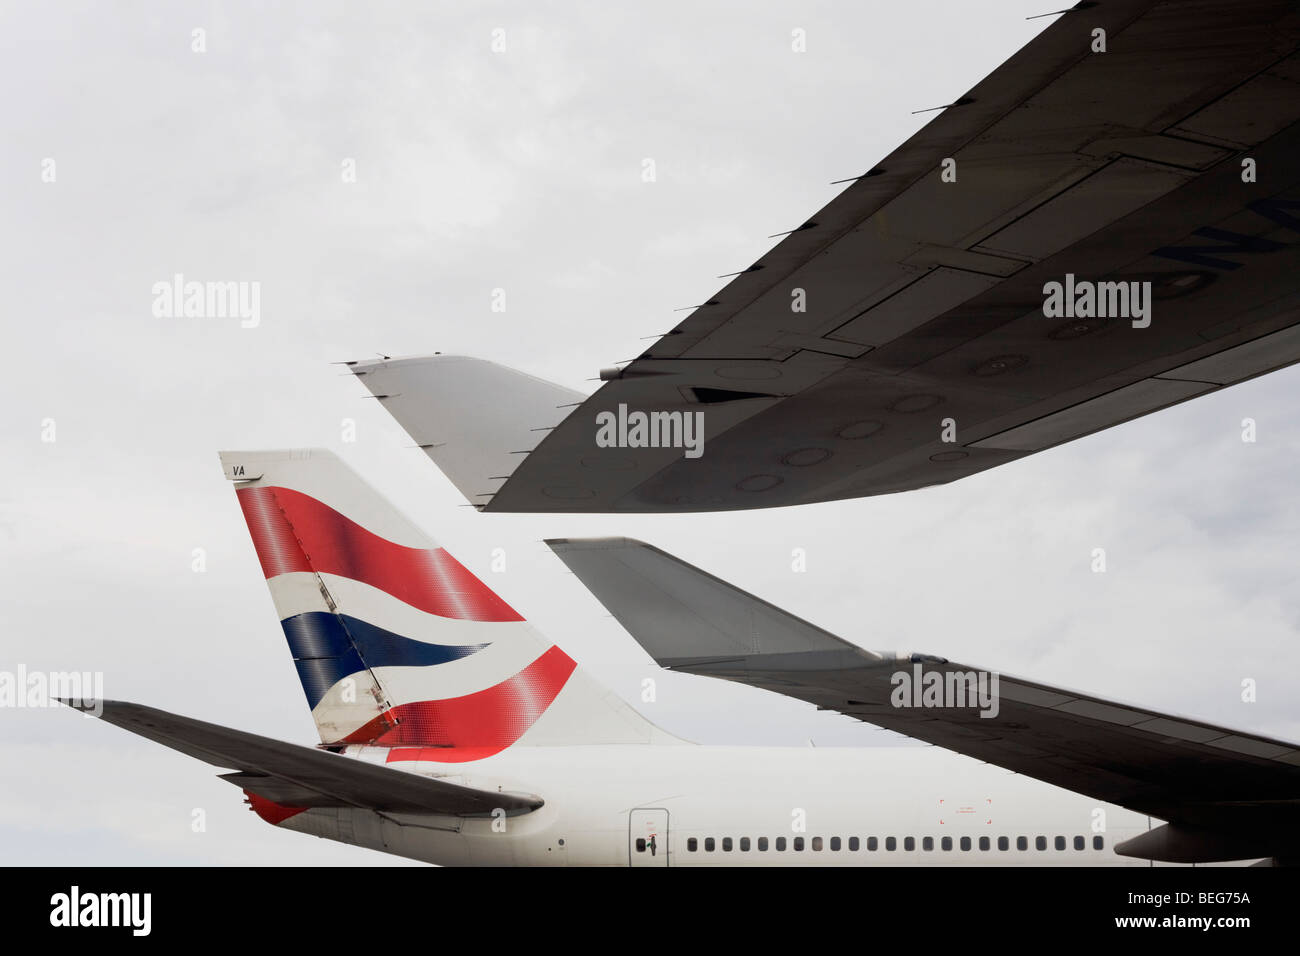 Ali e coda da British Airways 747 aerei di linea sono quasi a contatto durante i loro cicli di guida con inversione di marcia mentre sul piazzale dell'aeroporto di Heathrow Foto Stock